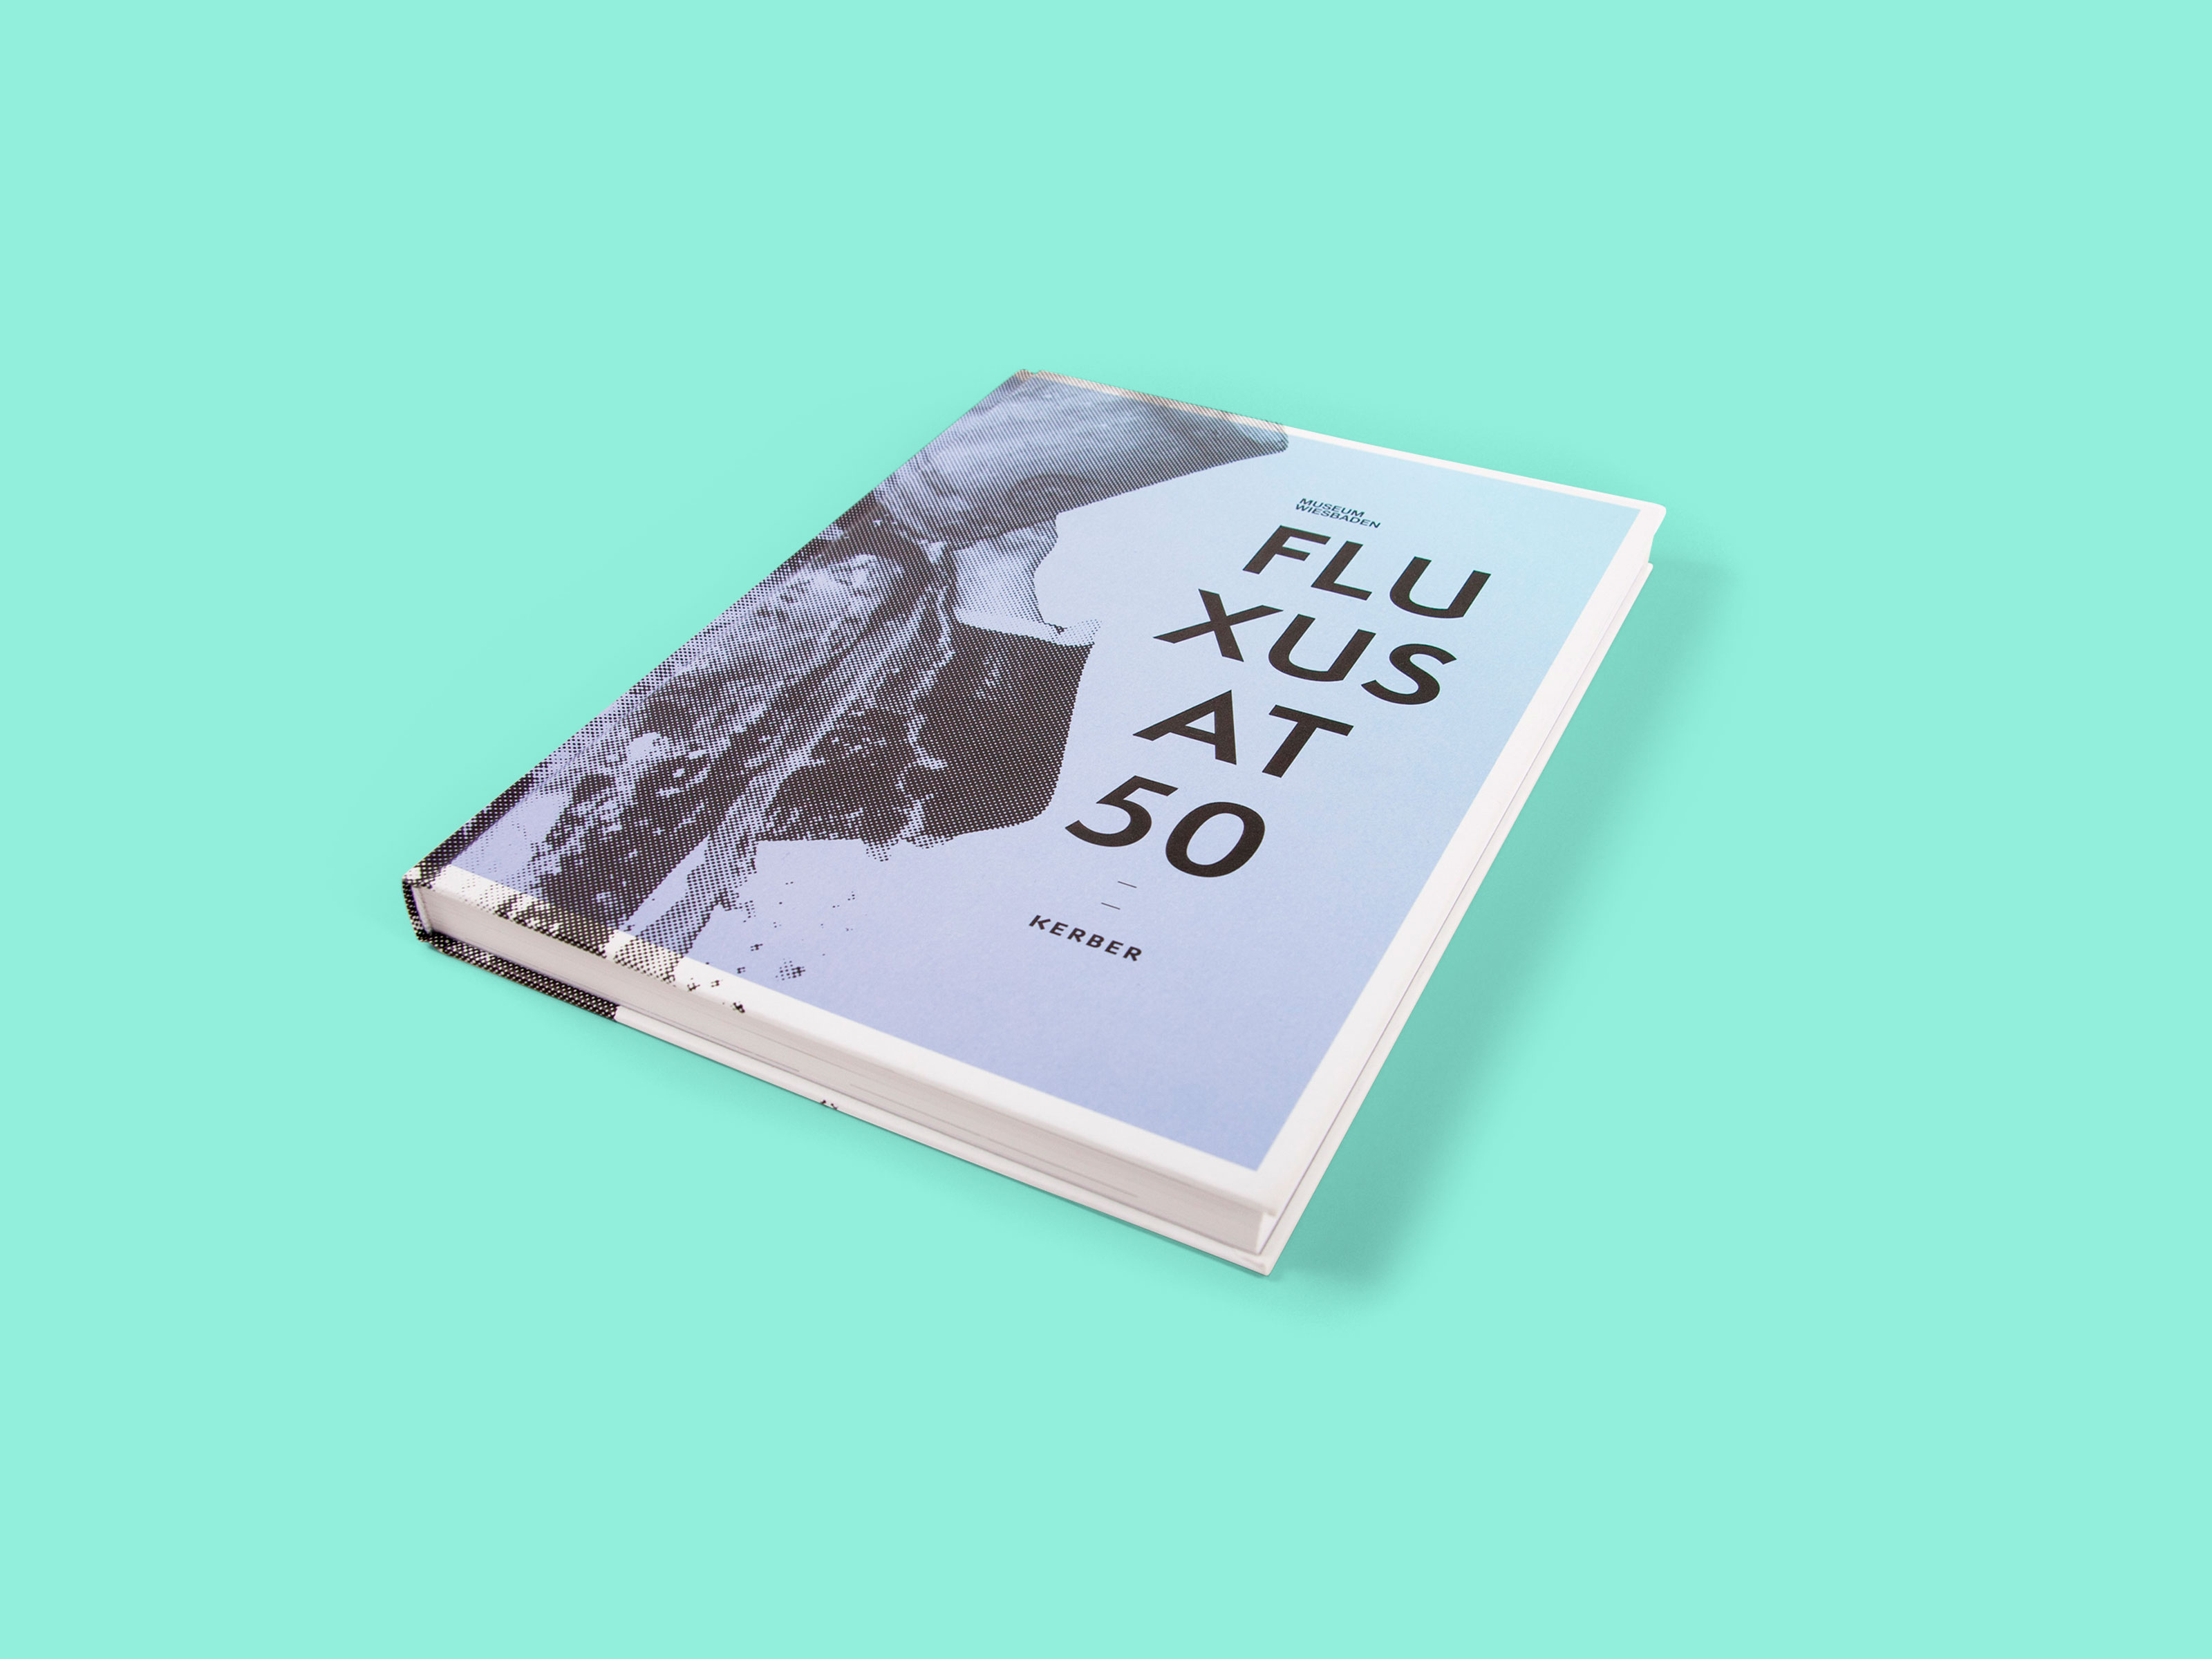 Fluxus At 50 – Ausstellungsbuch